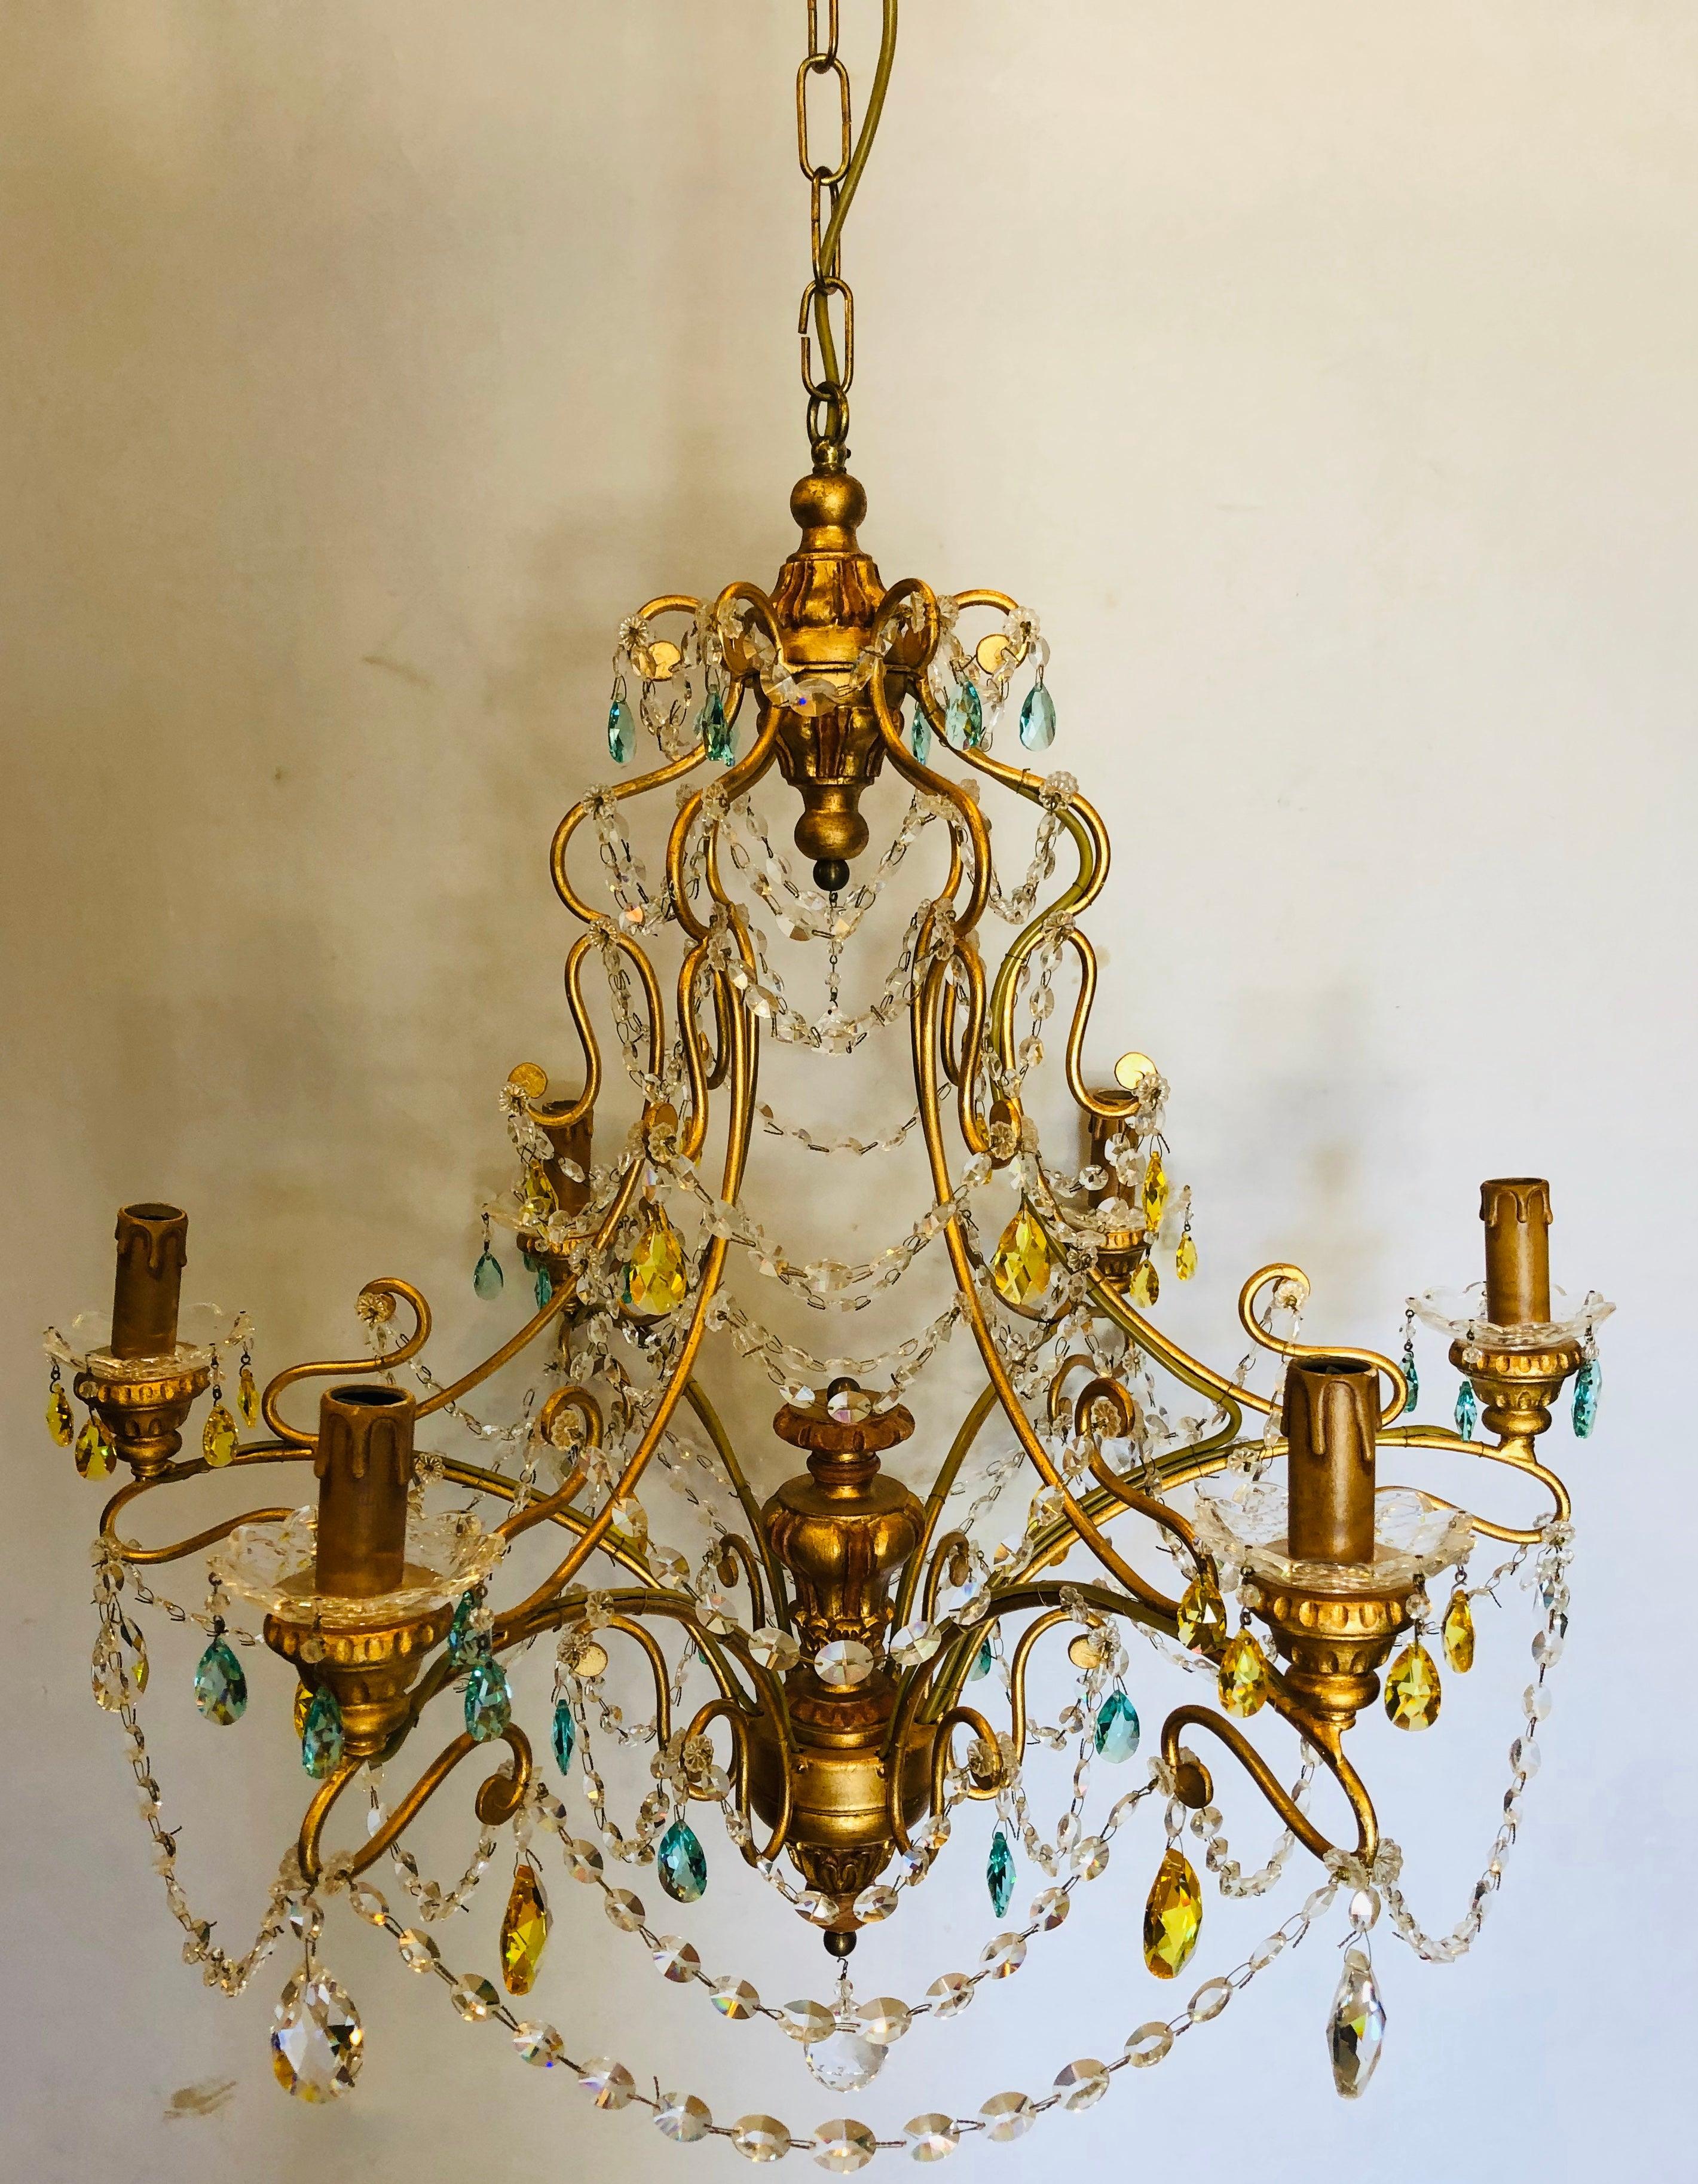 Lustre néoclassique italien fabriqué à la main en métal doré et en cristal. Ce lustre élégant et raffiné en cristal de Murano rappelle le savoir-faire qui a fait d'Alba Lighting un nom connu dans le secteur de l'éclairage. Le fin fer forgé doré à